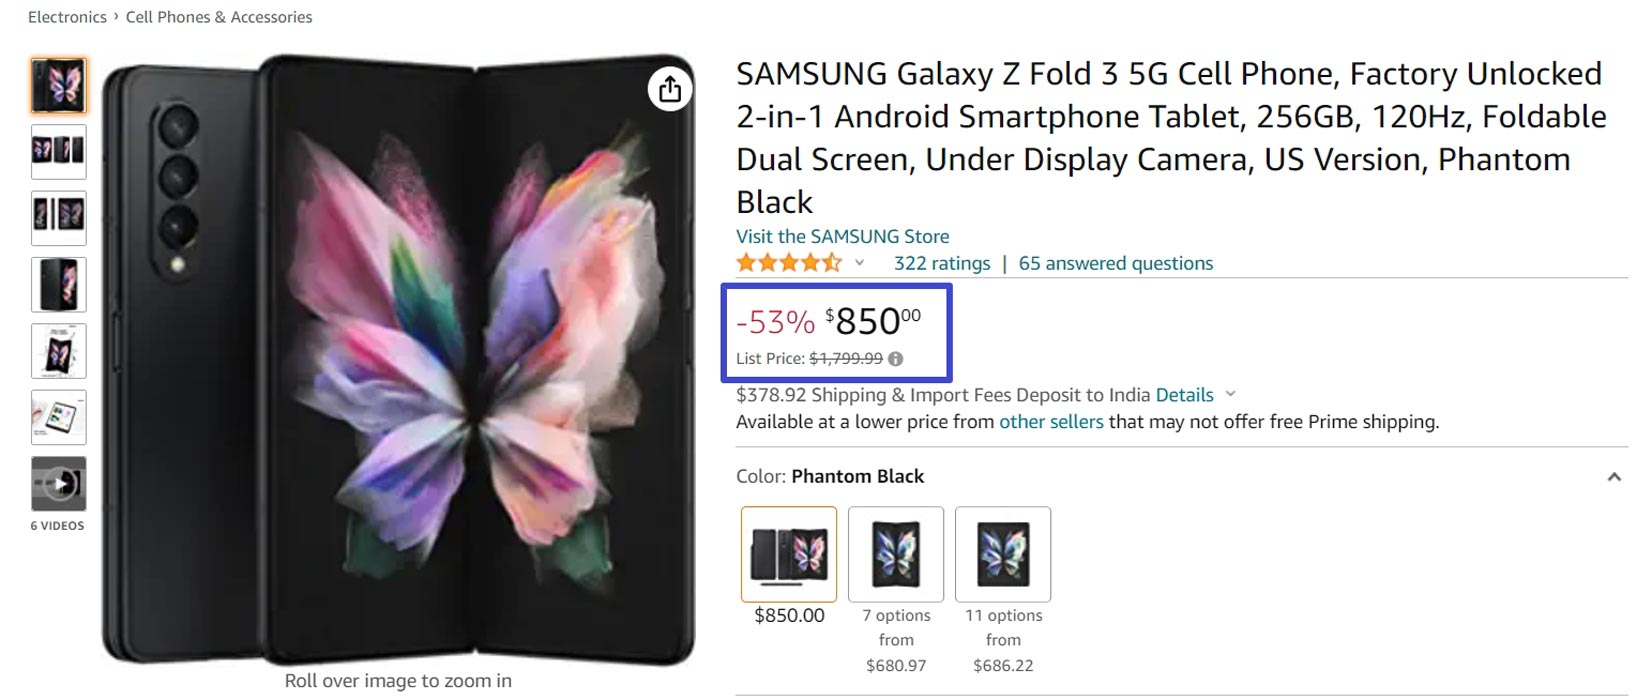 Samsung Galaxy Z Fold 3 53 Percentage Offer